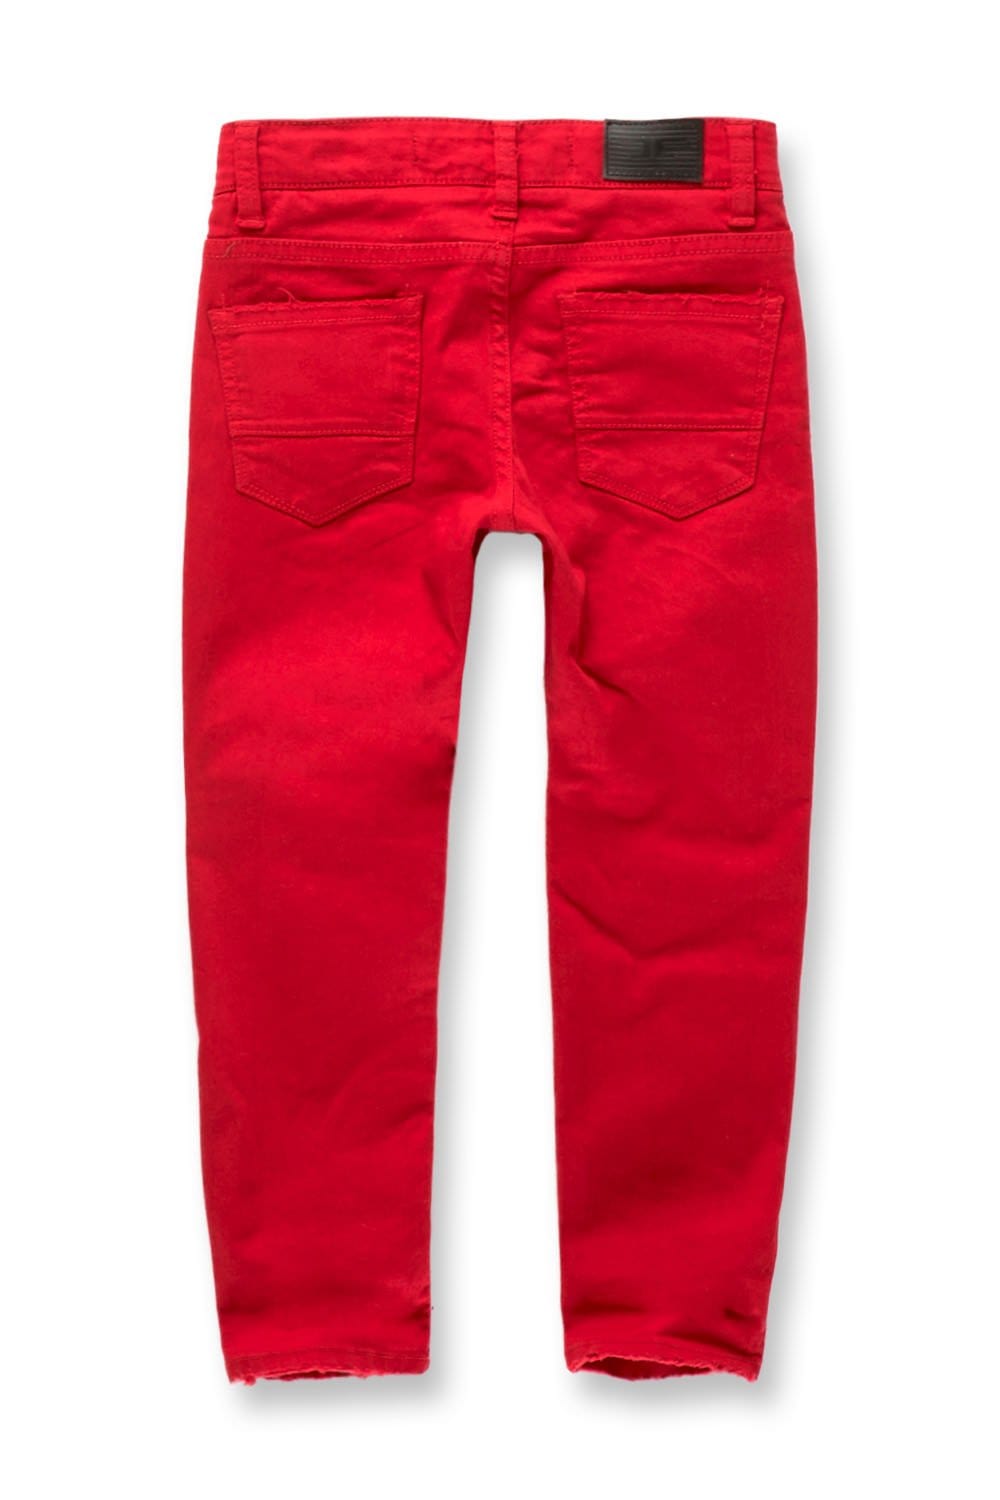 JC Kids Kids Tribeca Twill Pants (Red)